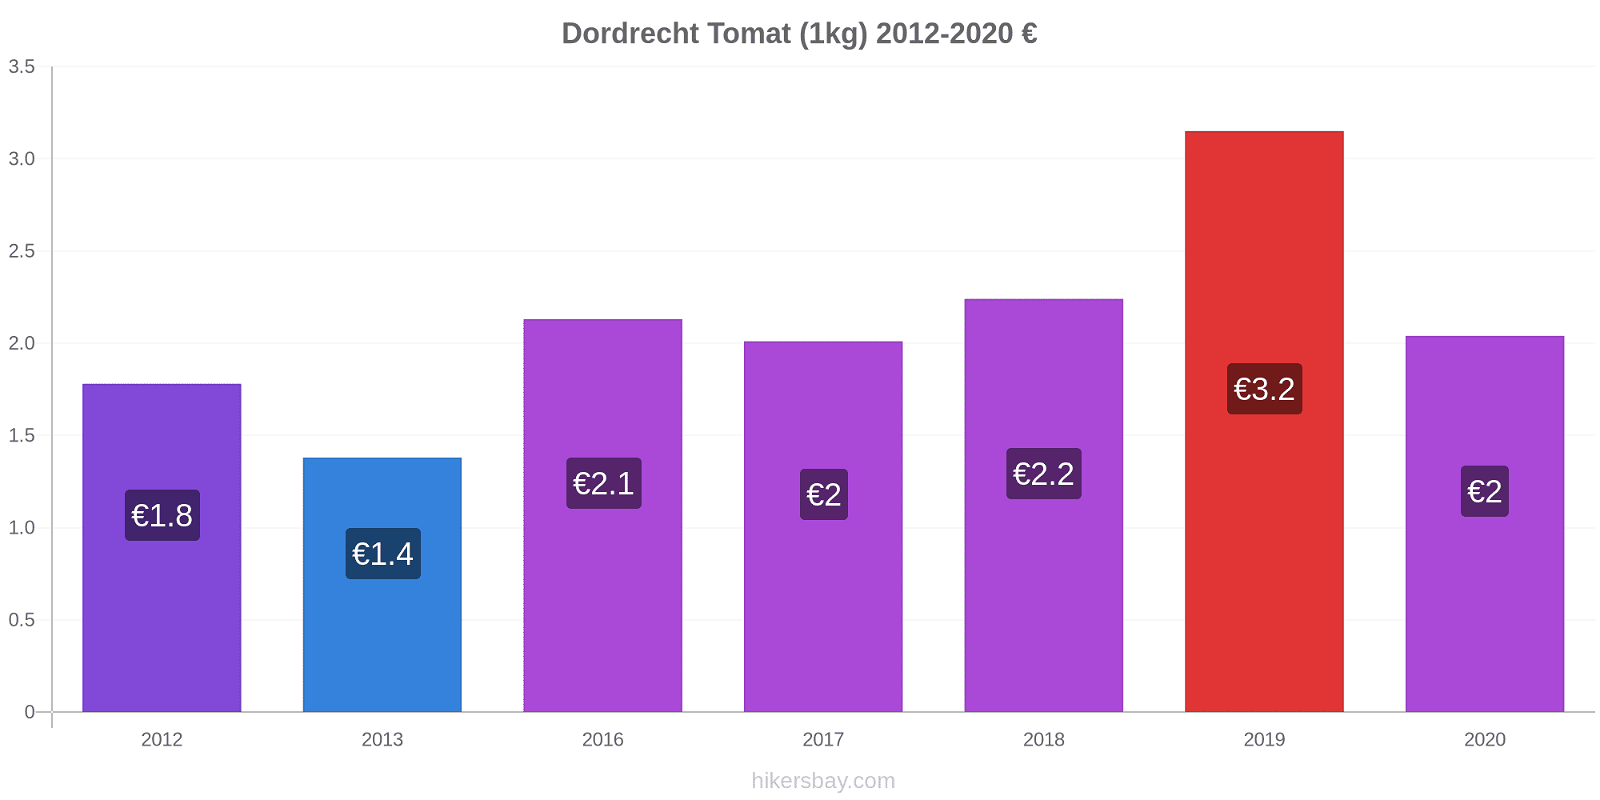 Dordrecht perubahan harga Tomat (1kg) hikersbay.com